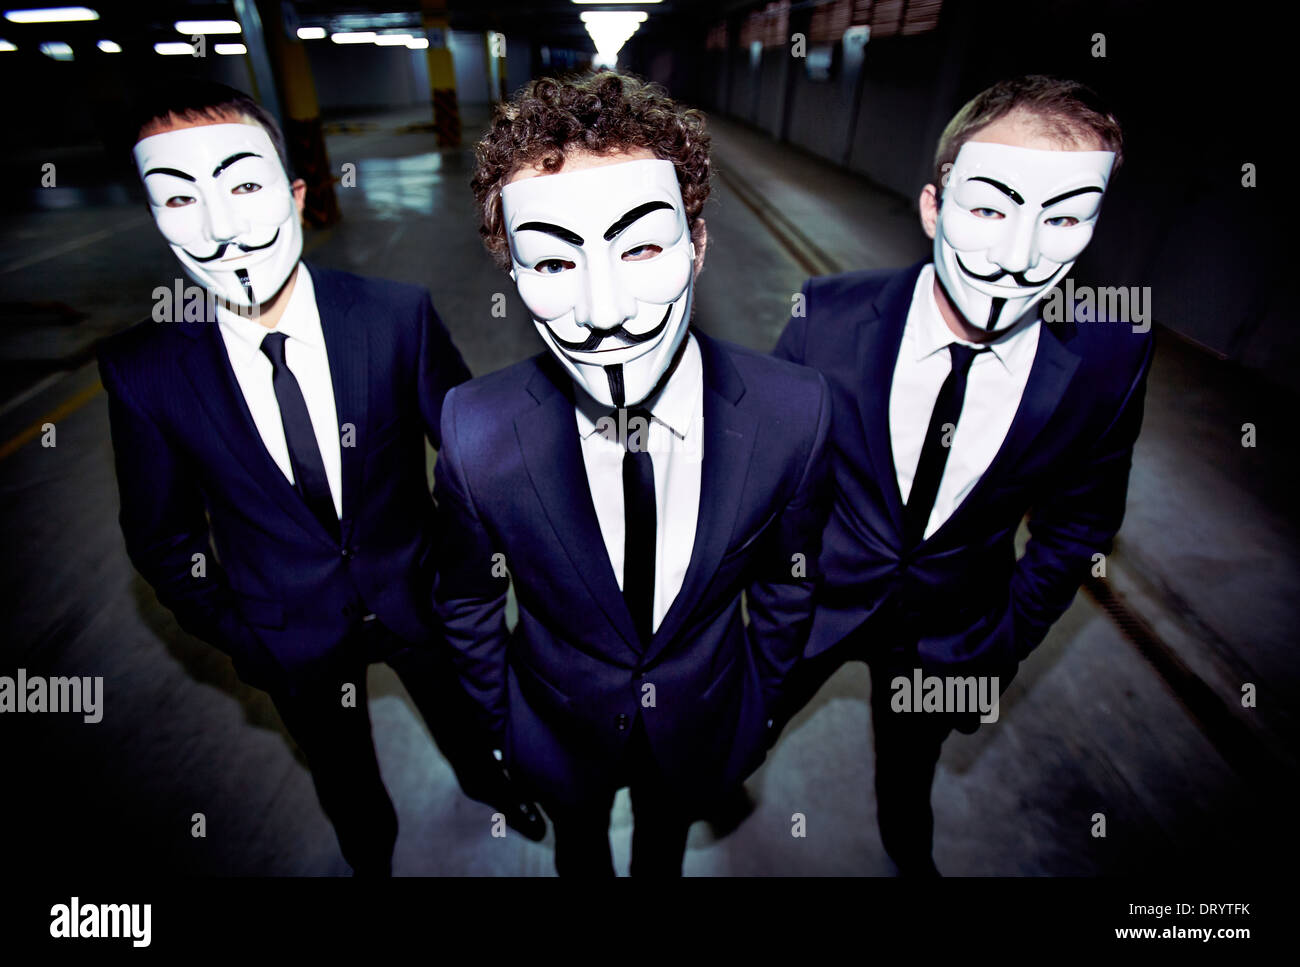 Portrait de trois gars dans les masques de Guy Fawkes et ressemble à une apparence formelle Banque D'Images